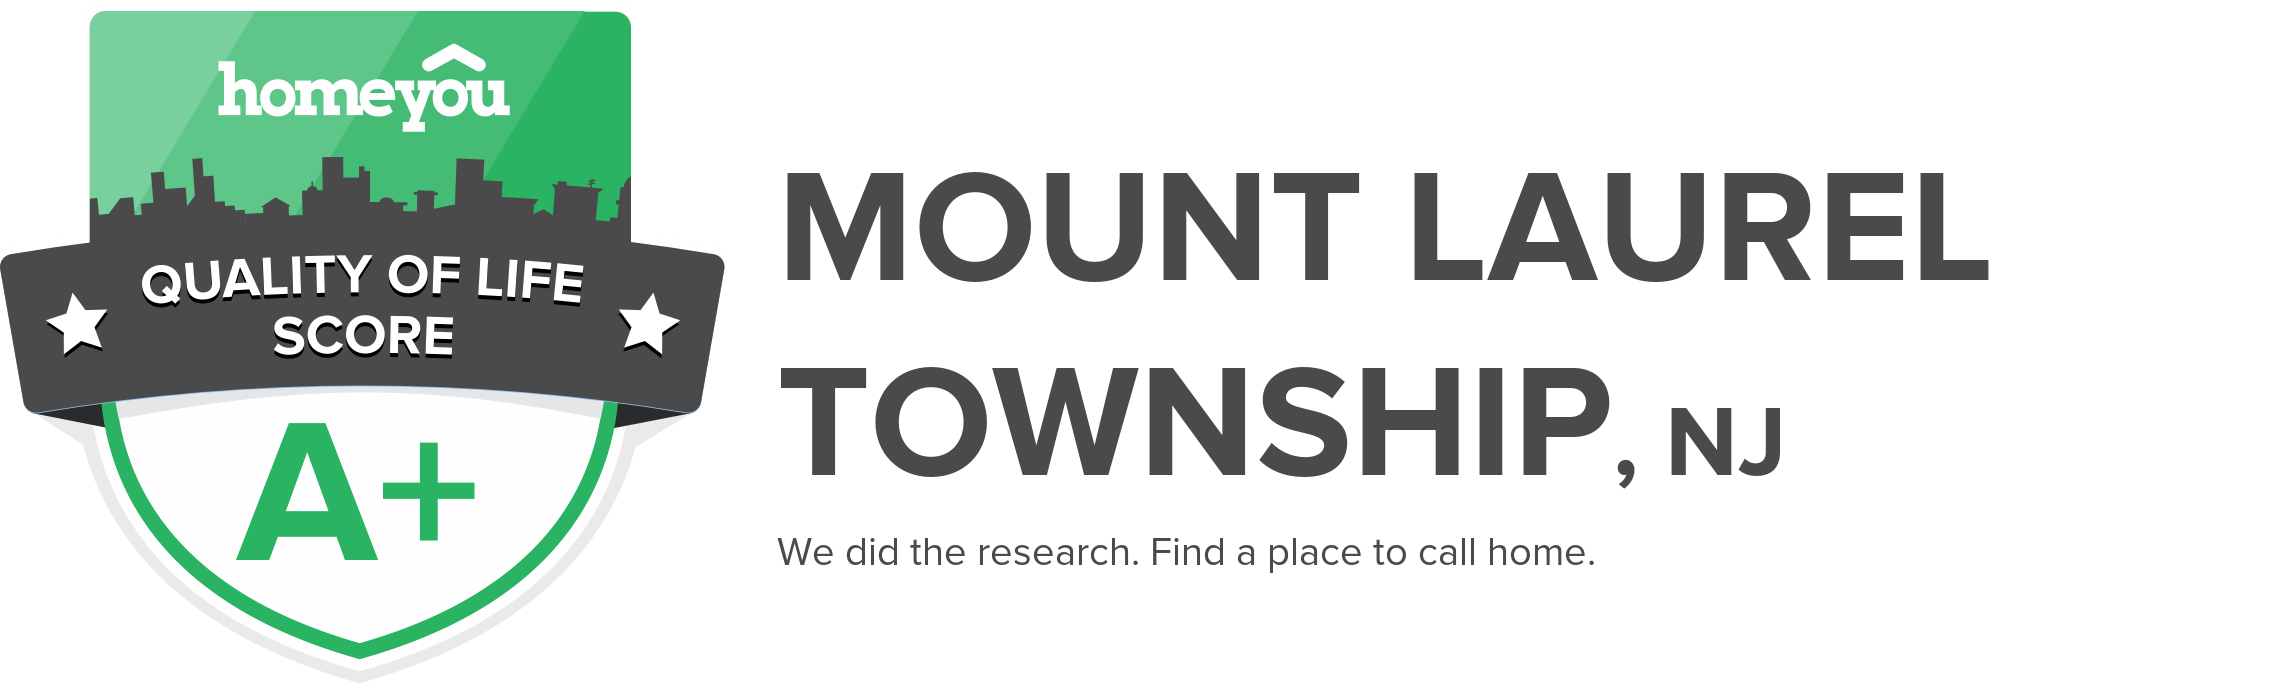 Mount Laurel Township, NJ